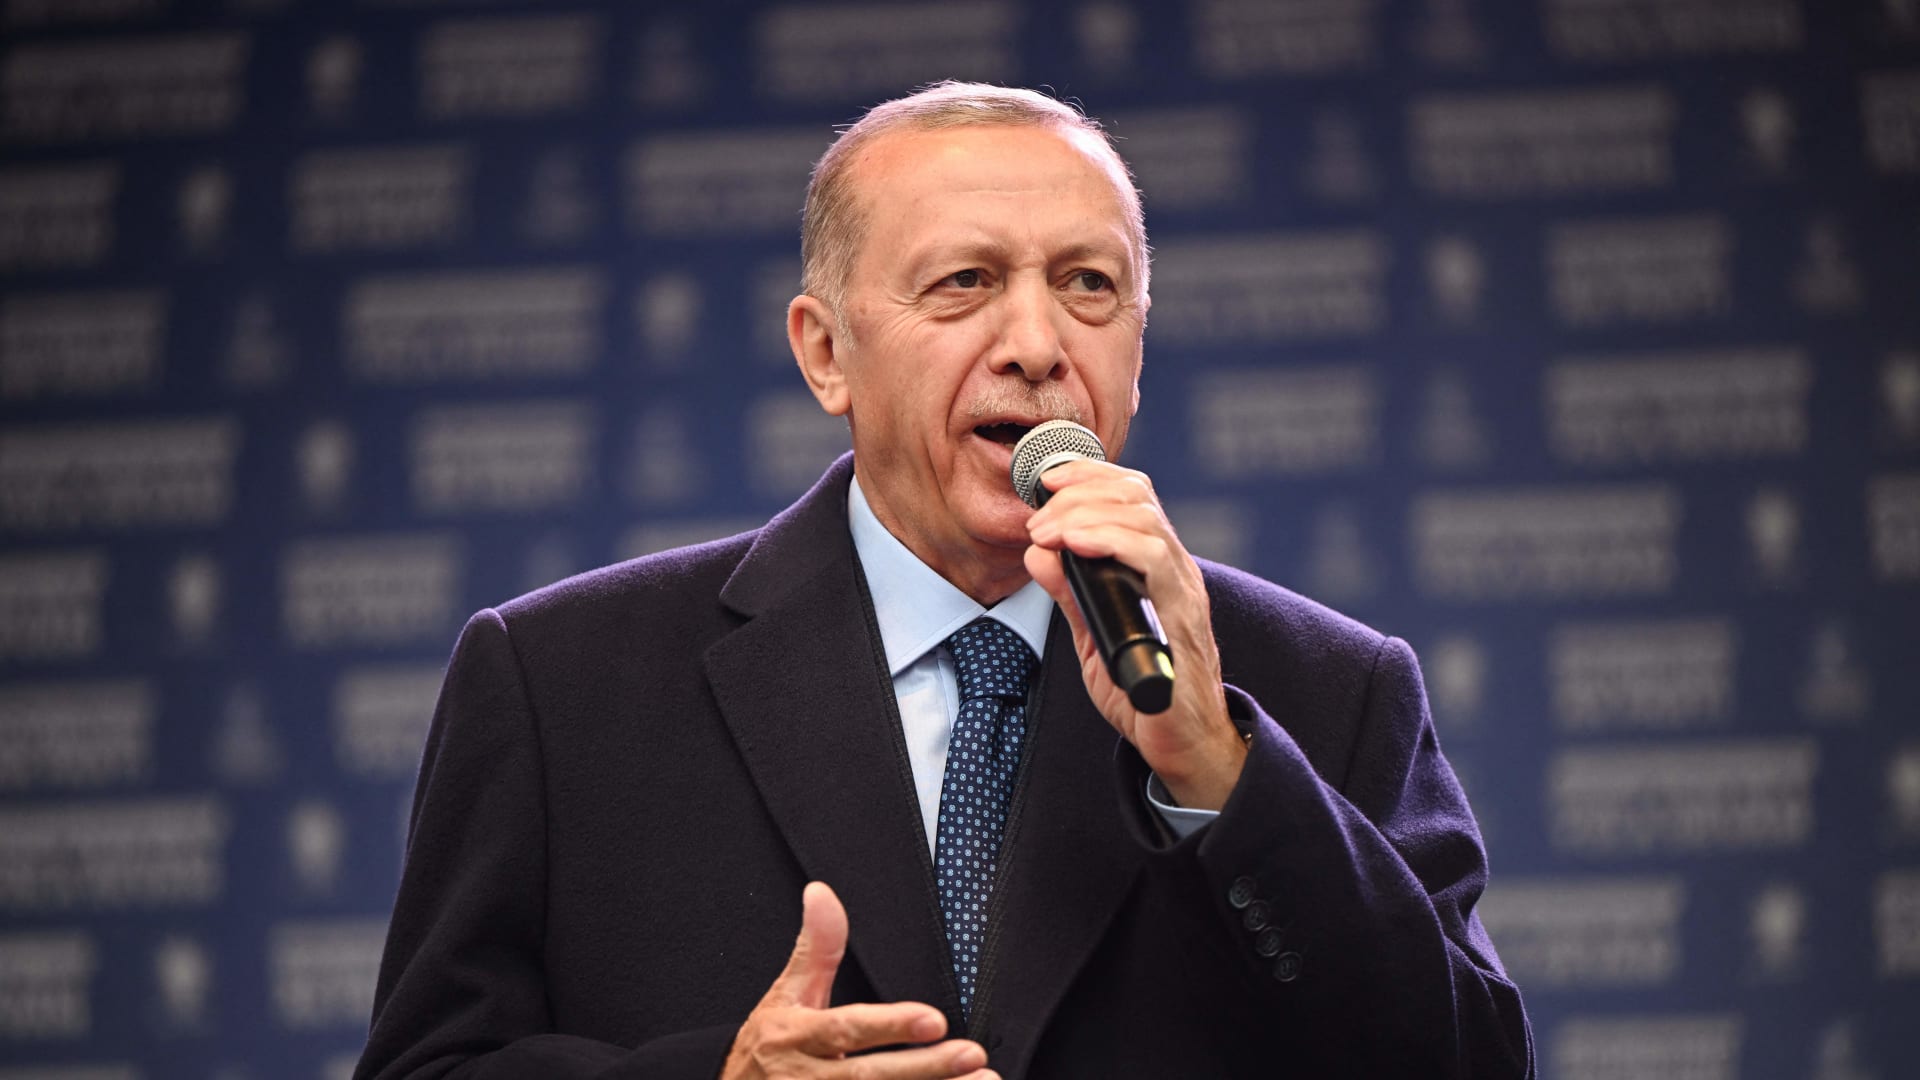 أمانبور تشرح سبب كون أردوغان حليفًا غربيًا "لا يمكن التنبؤ به"